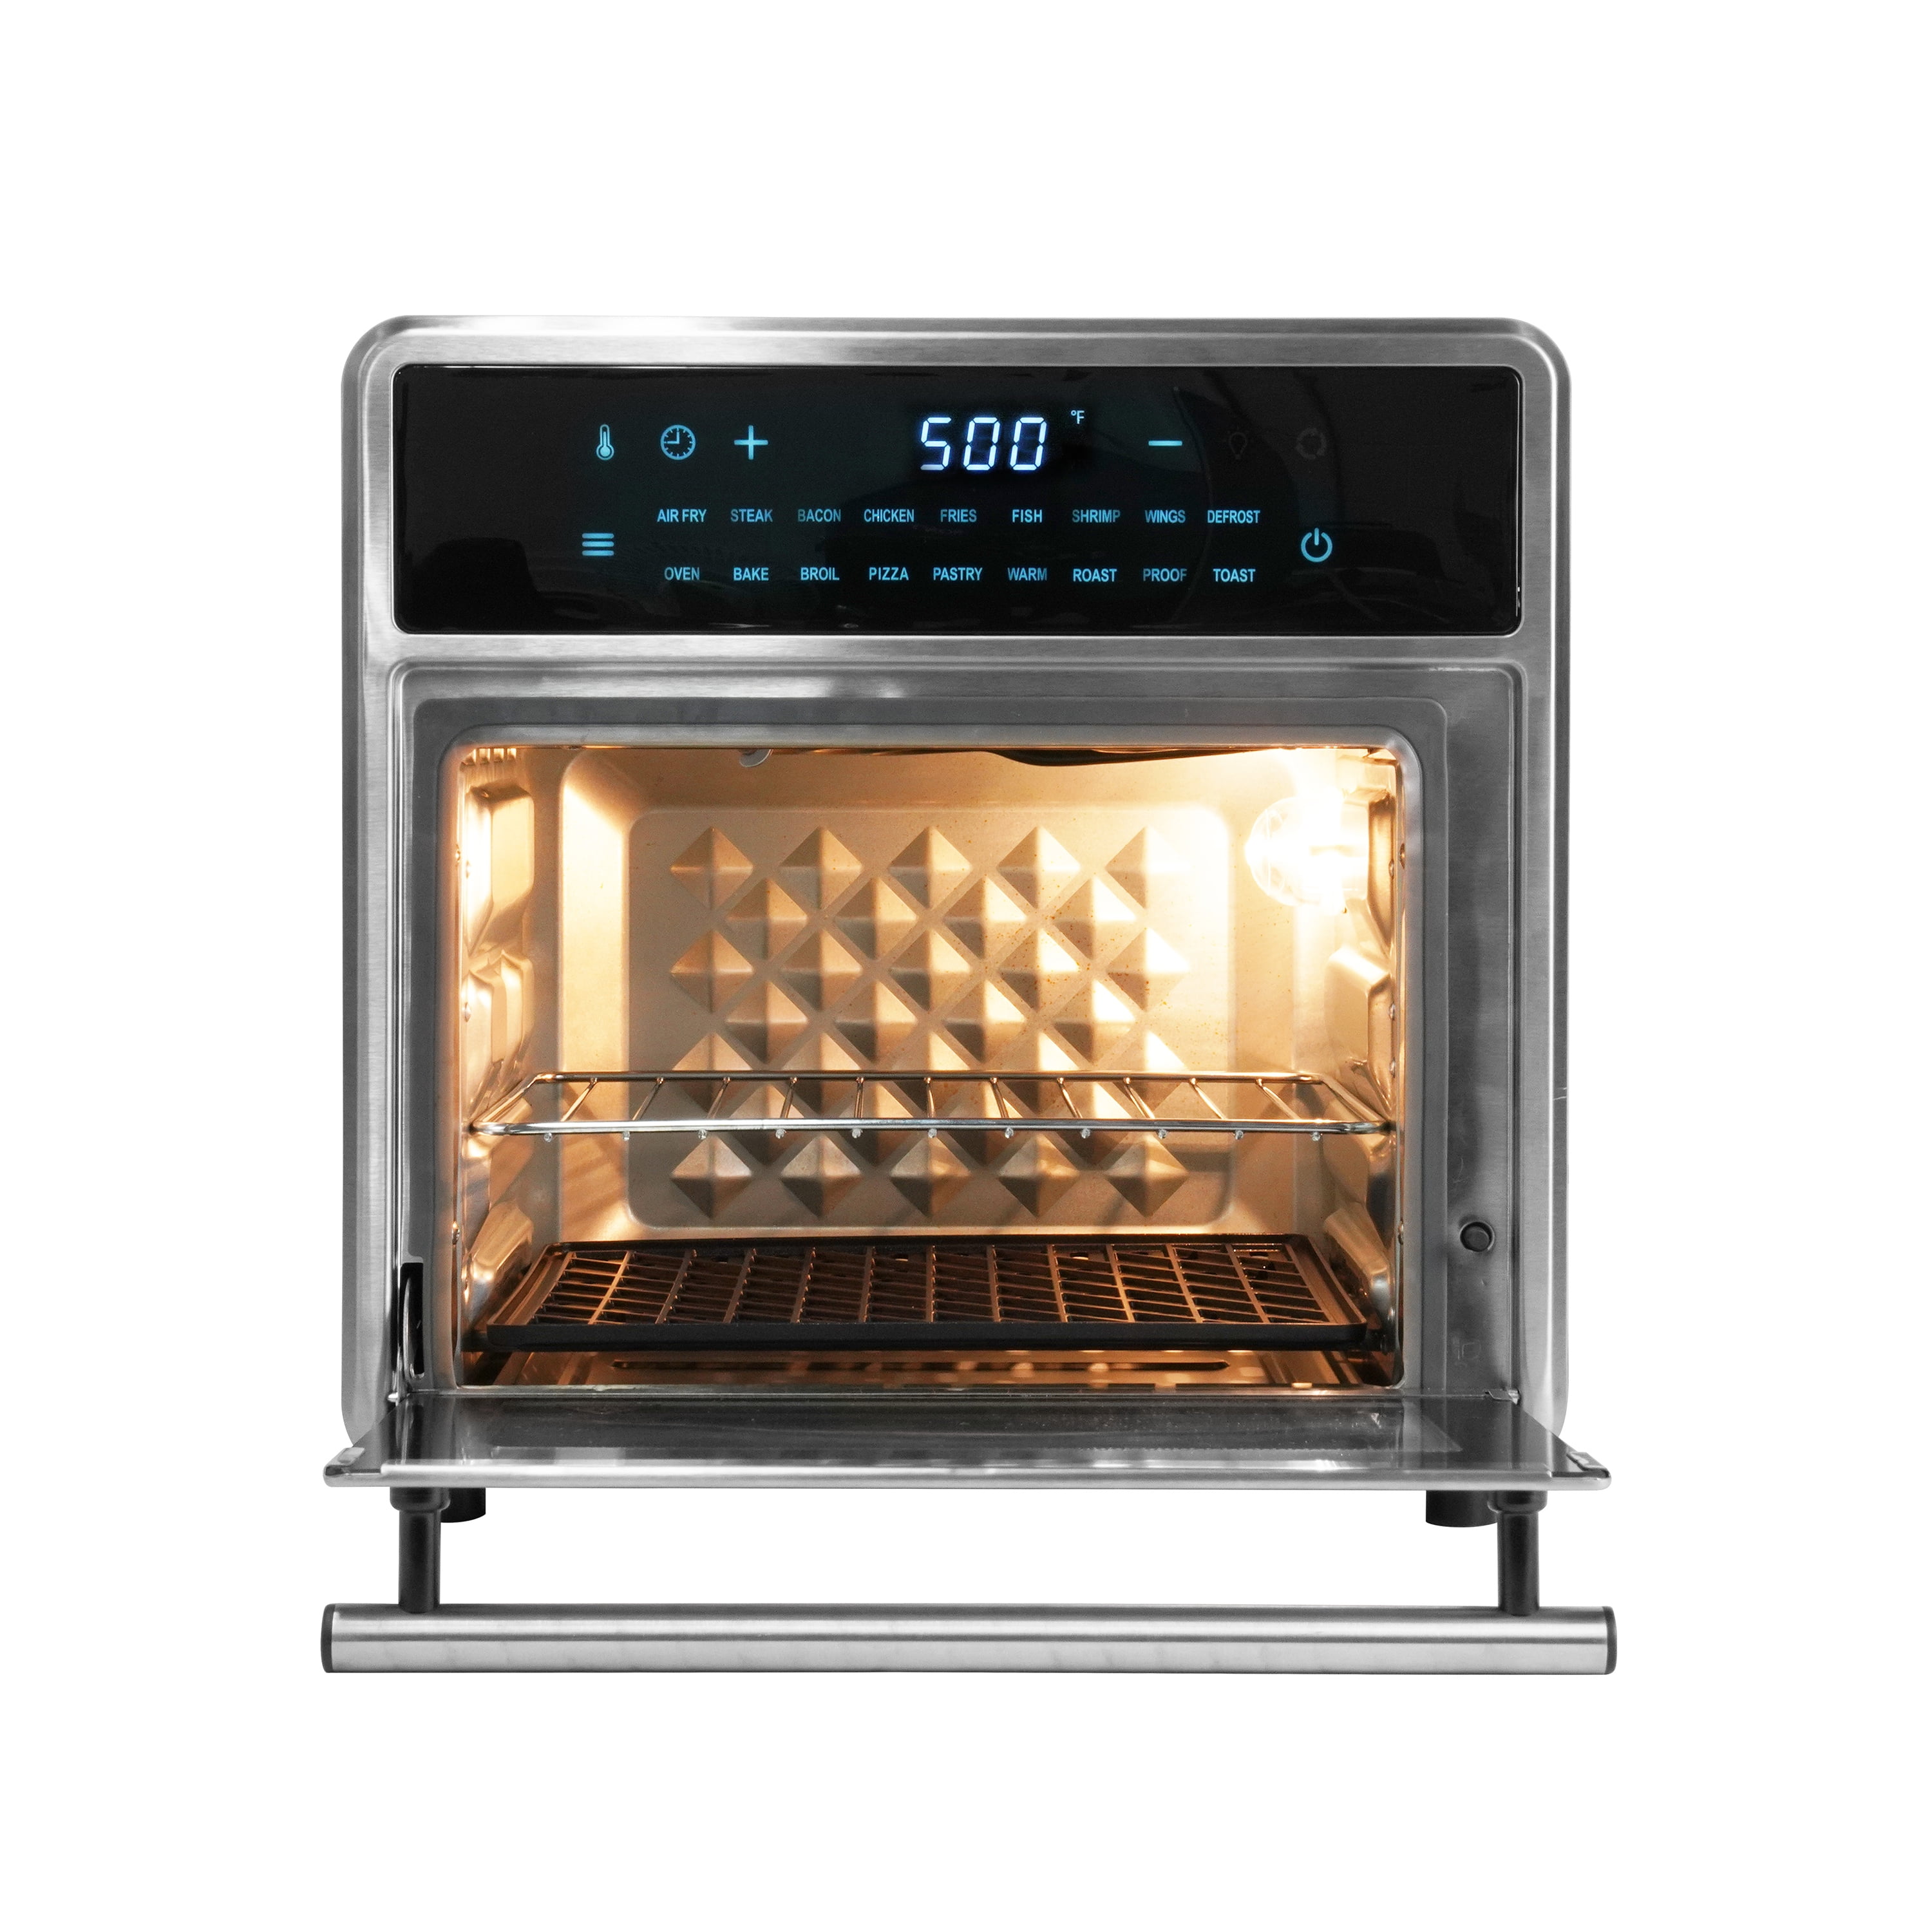 Kalorik MAXX® 16 Quart Digital Air Fryer Oven